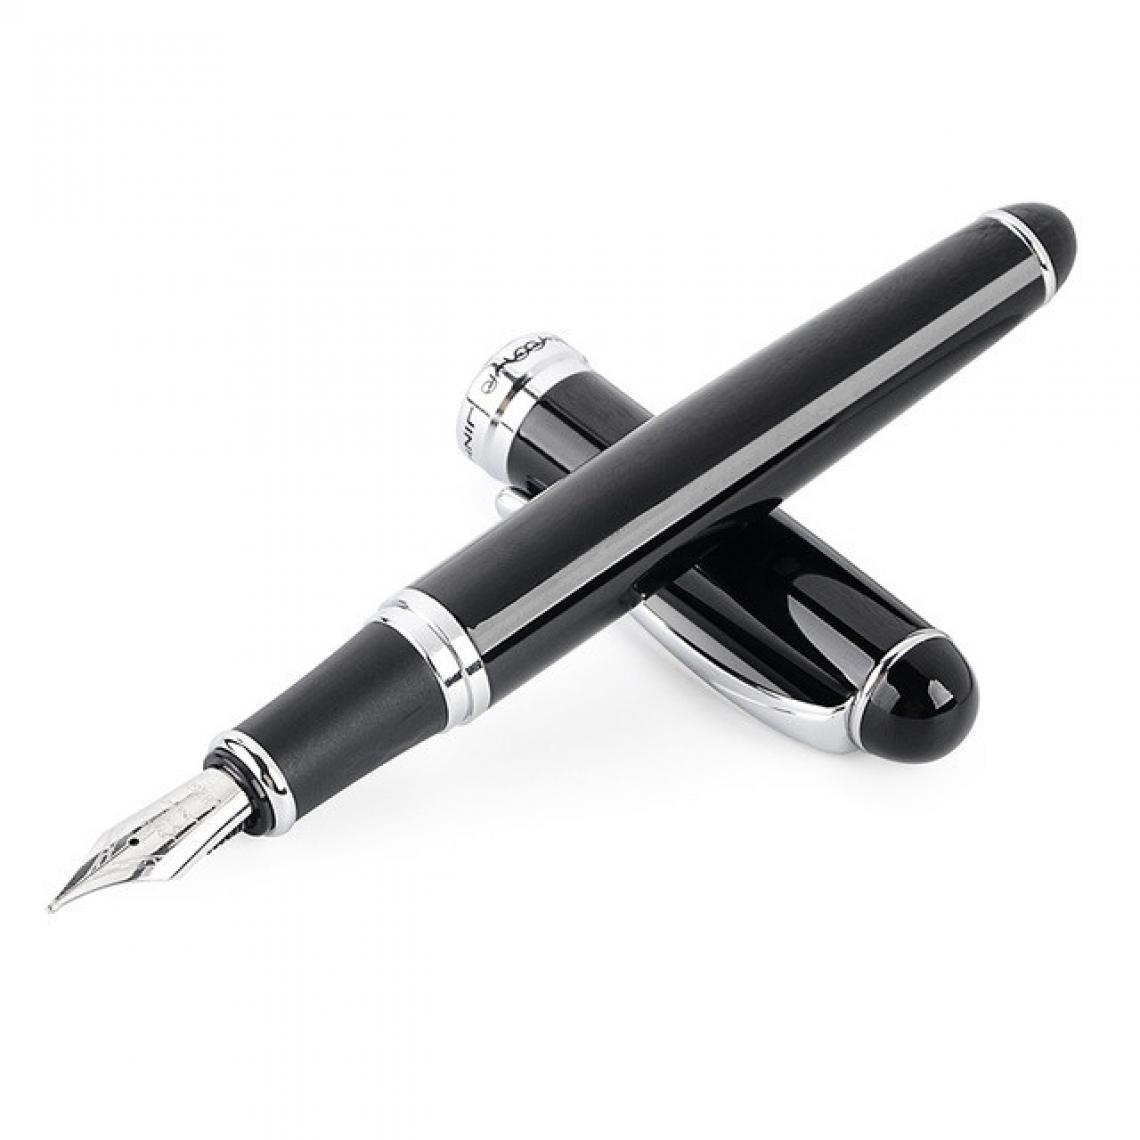 Wewoo - X750 papeterie stylo-plume en acier inoxydable plume moyenne stylos encre école cadeau cadeautaille 0.5mm noir - Accessoires Bureau